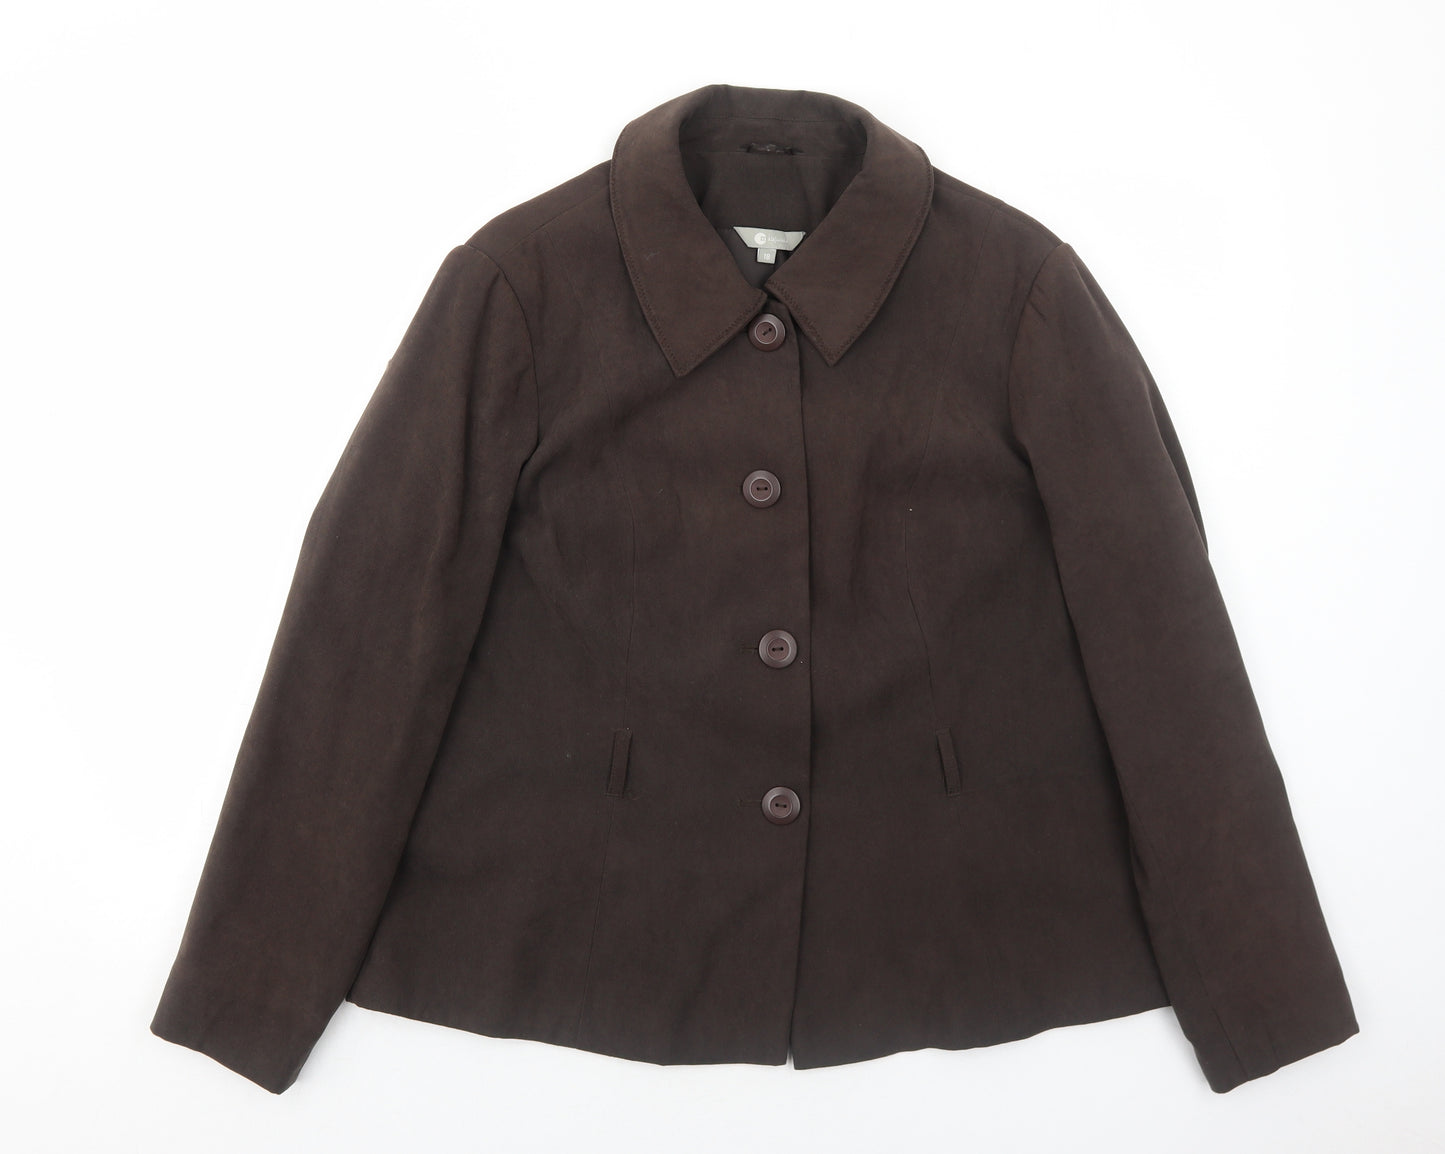 Mia Moda Womens Brown Jacket Size 18 Button